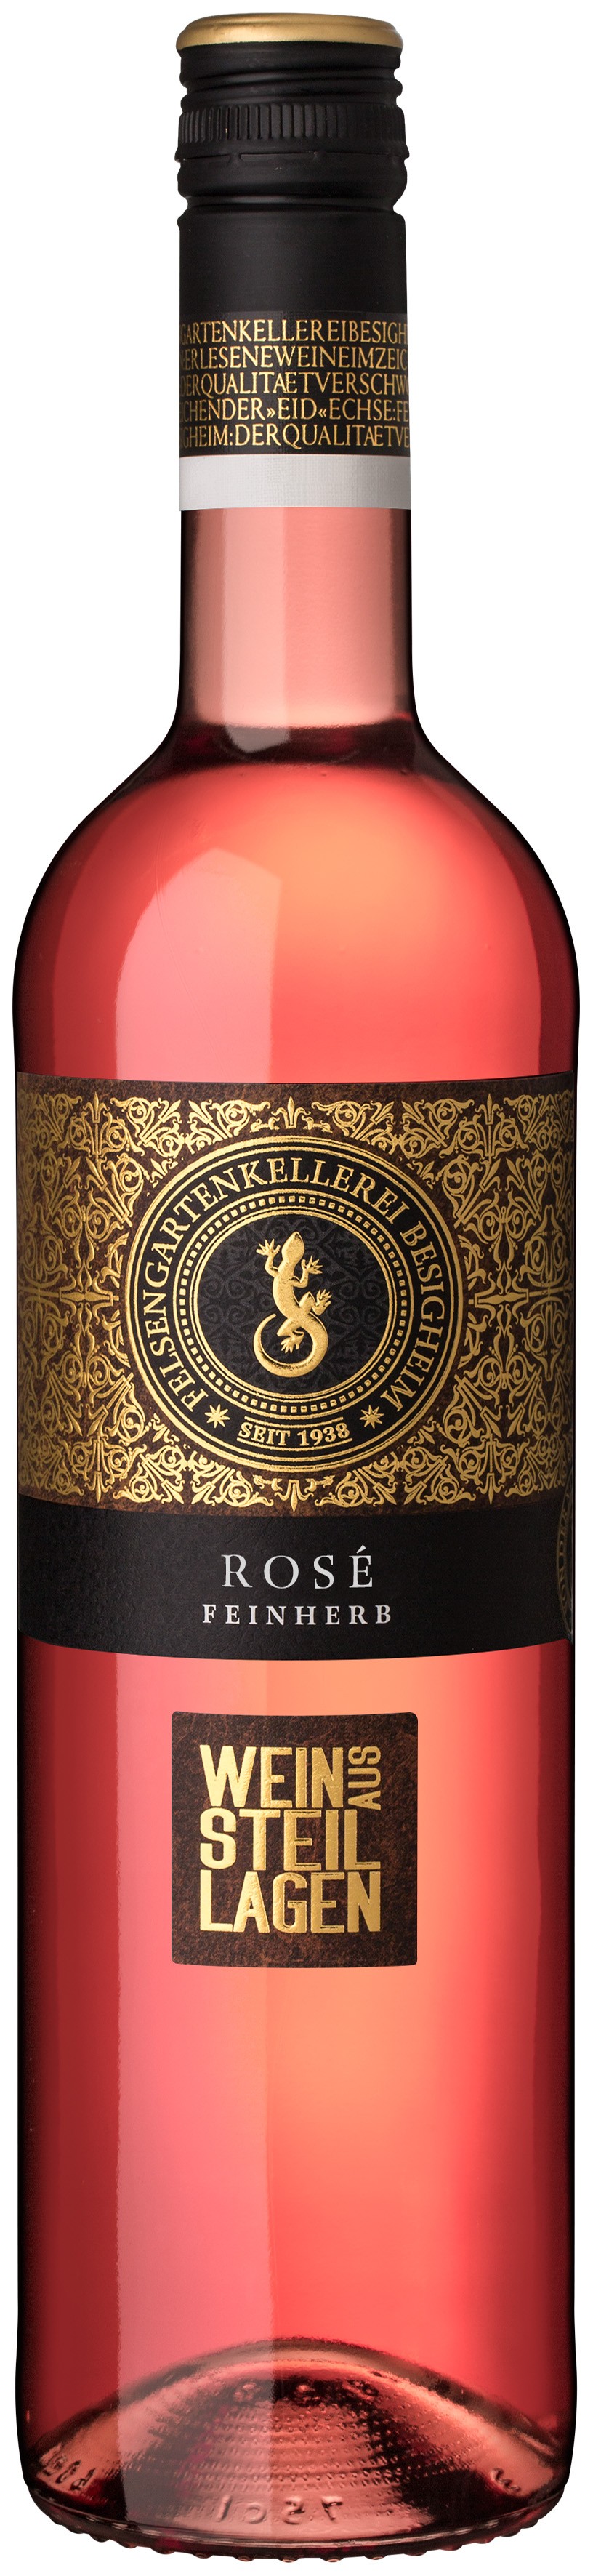 Besigheimer Felsengarten Steillagen Rosé Qualitätswein feinherb 